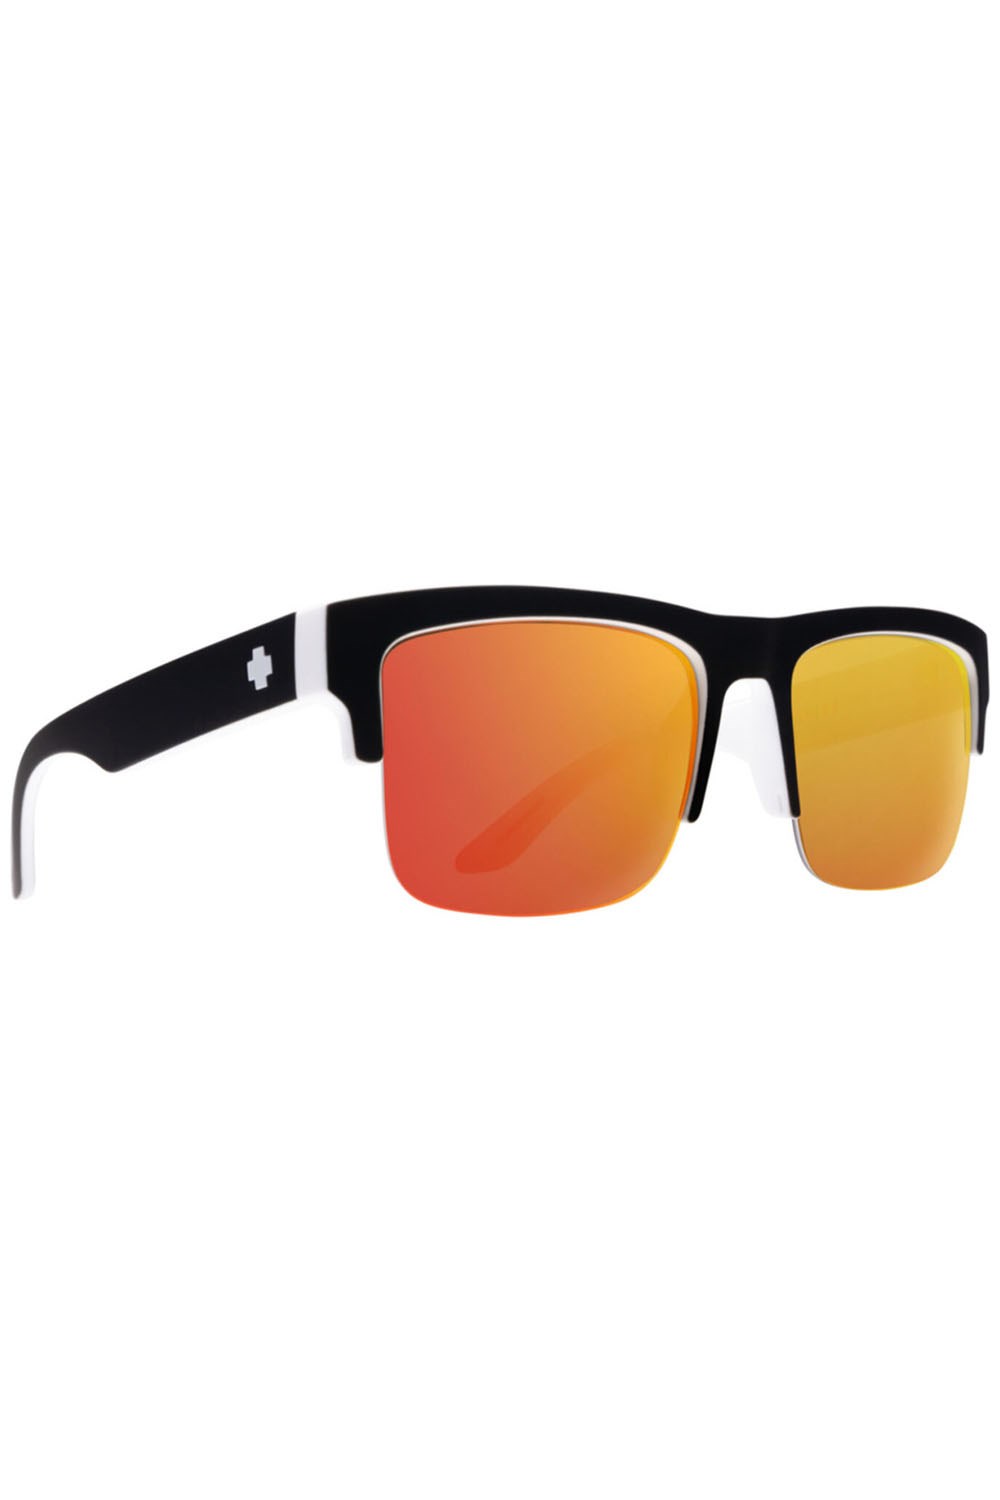 Discord 5050 Unisex Sunglasses -